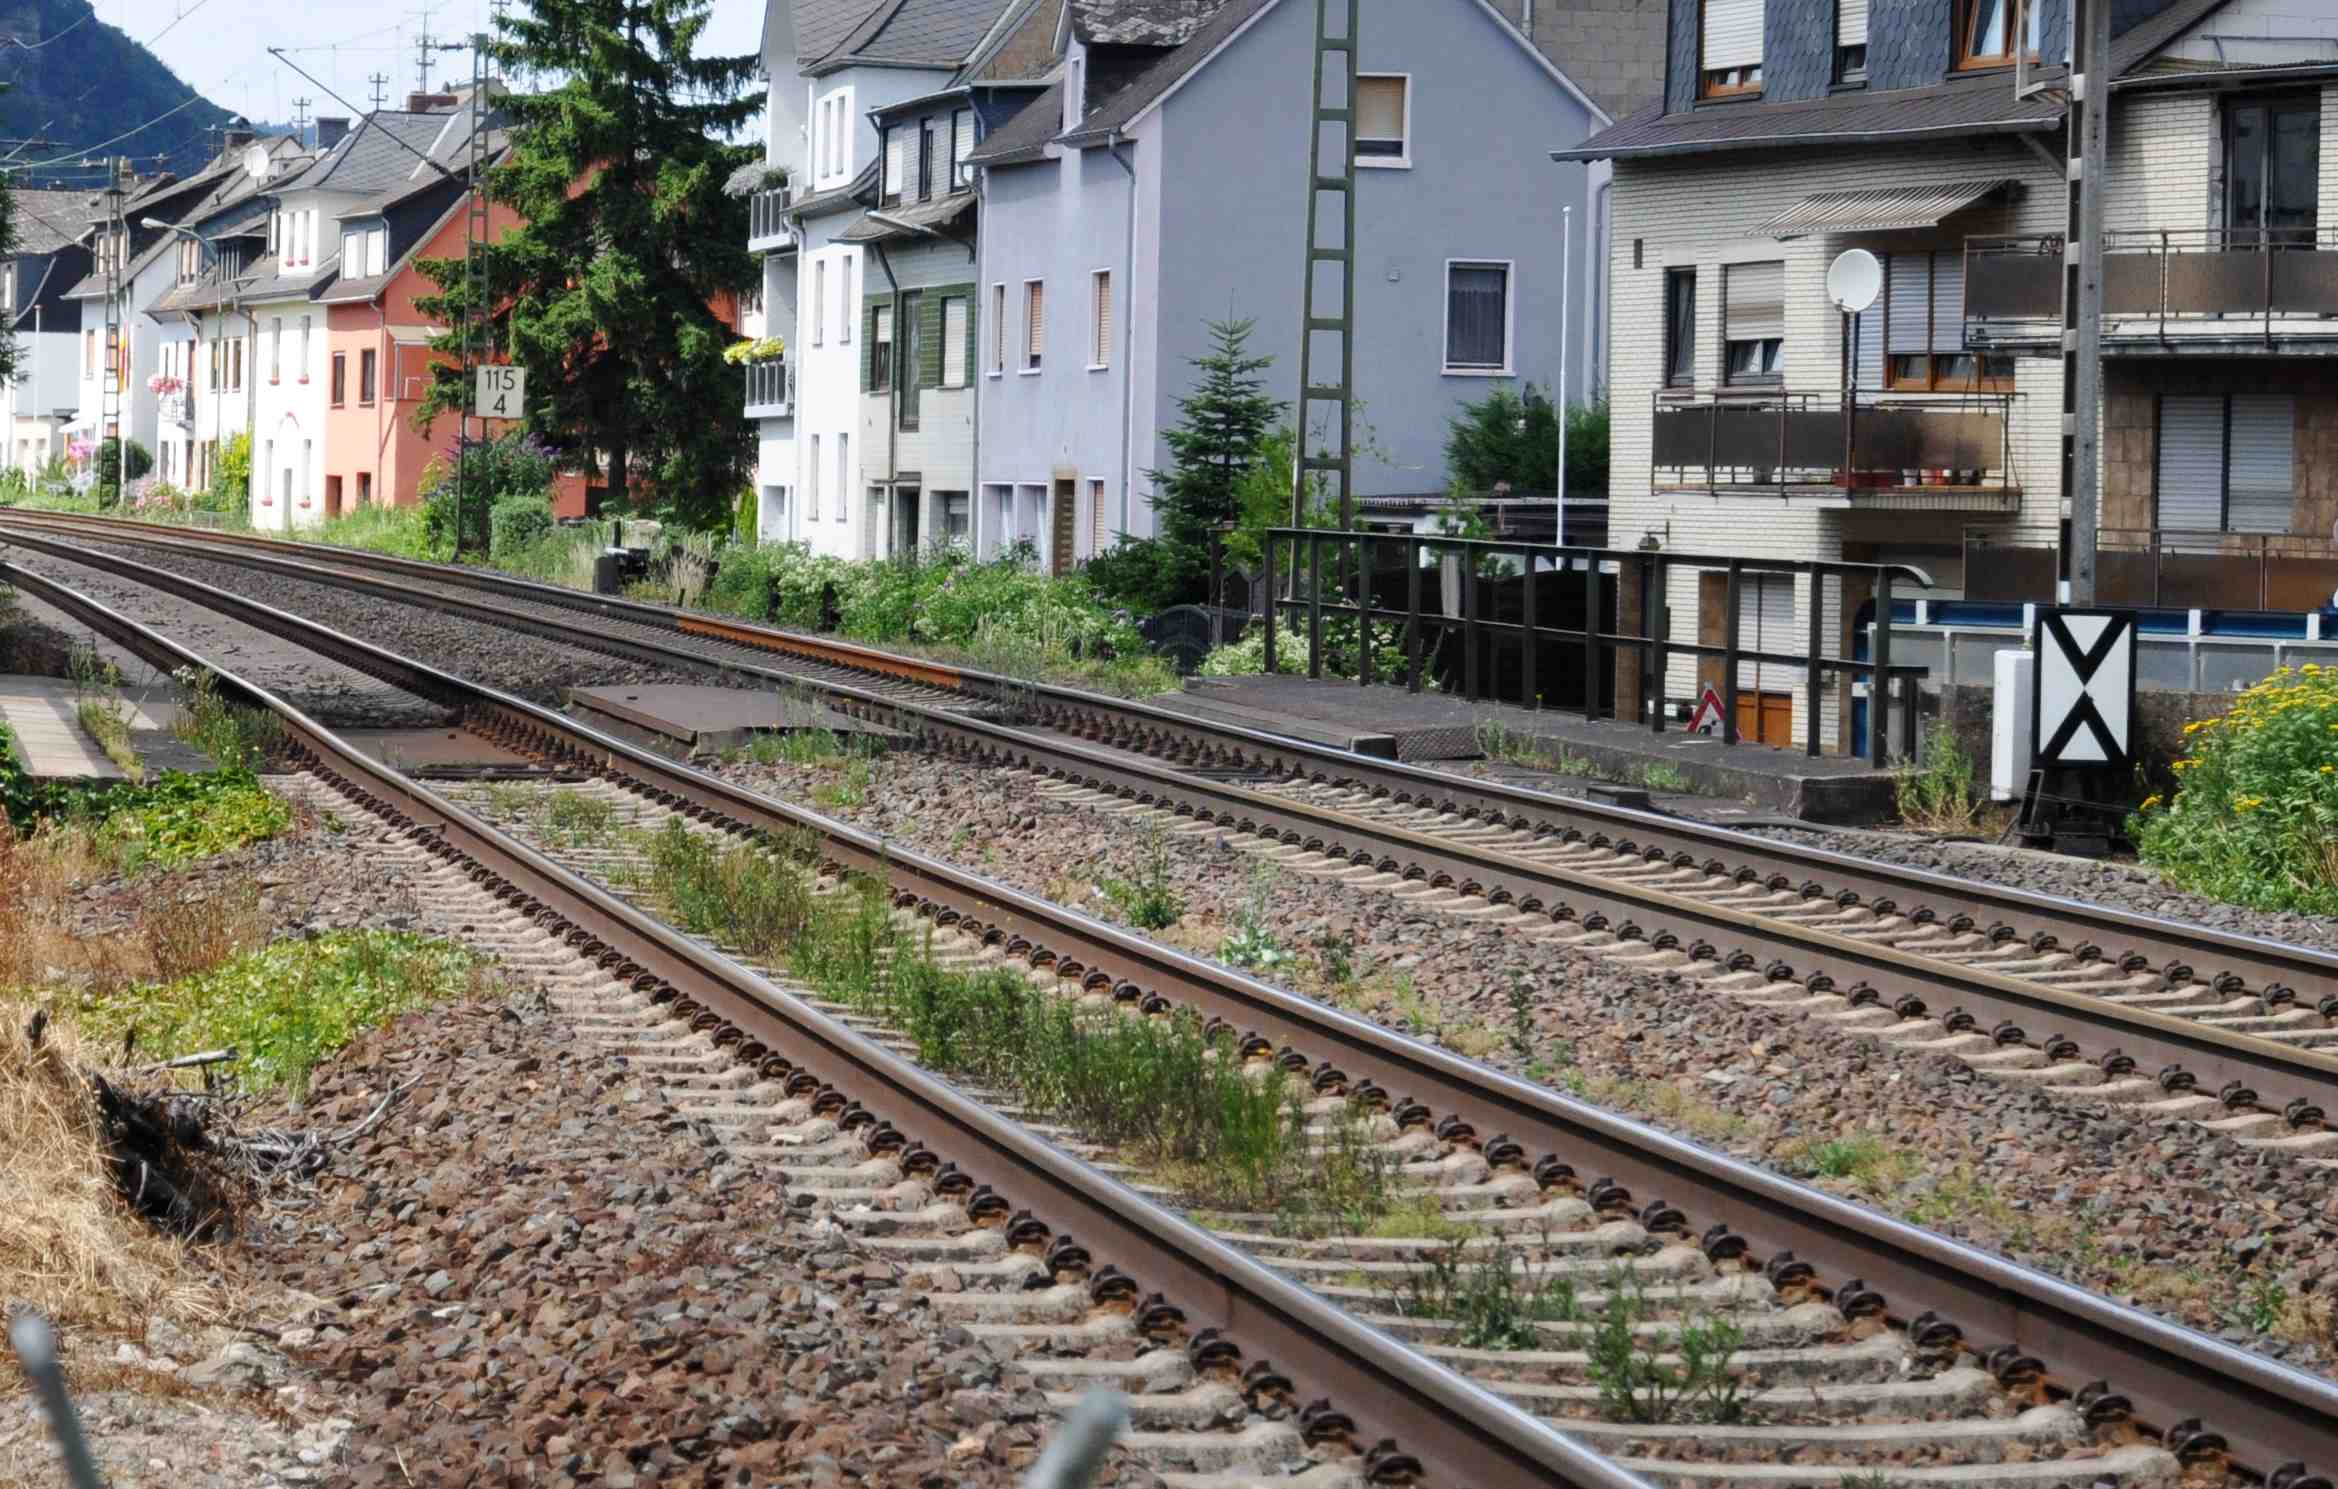 Bild 5: Orte im engen Mittelrheintal wie Bad Salzig sind dem höllischen Eisenbahnlärm